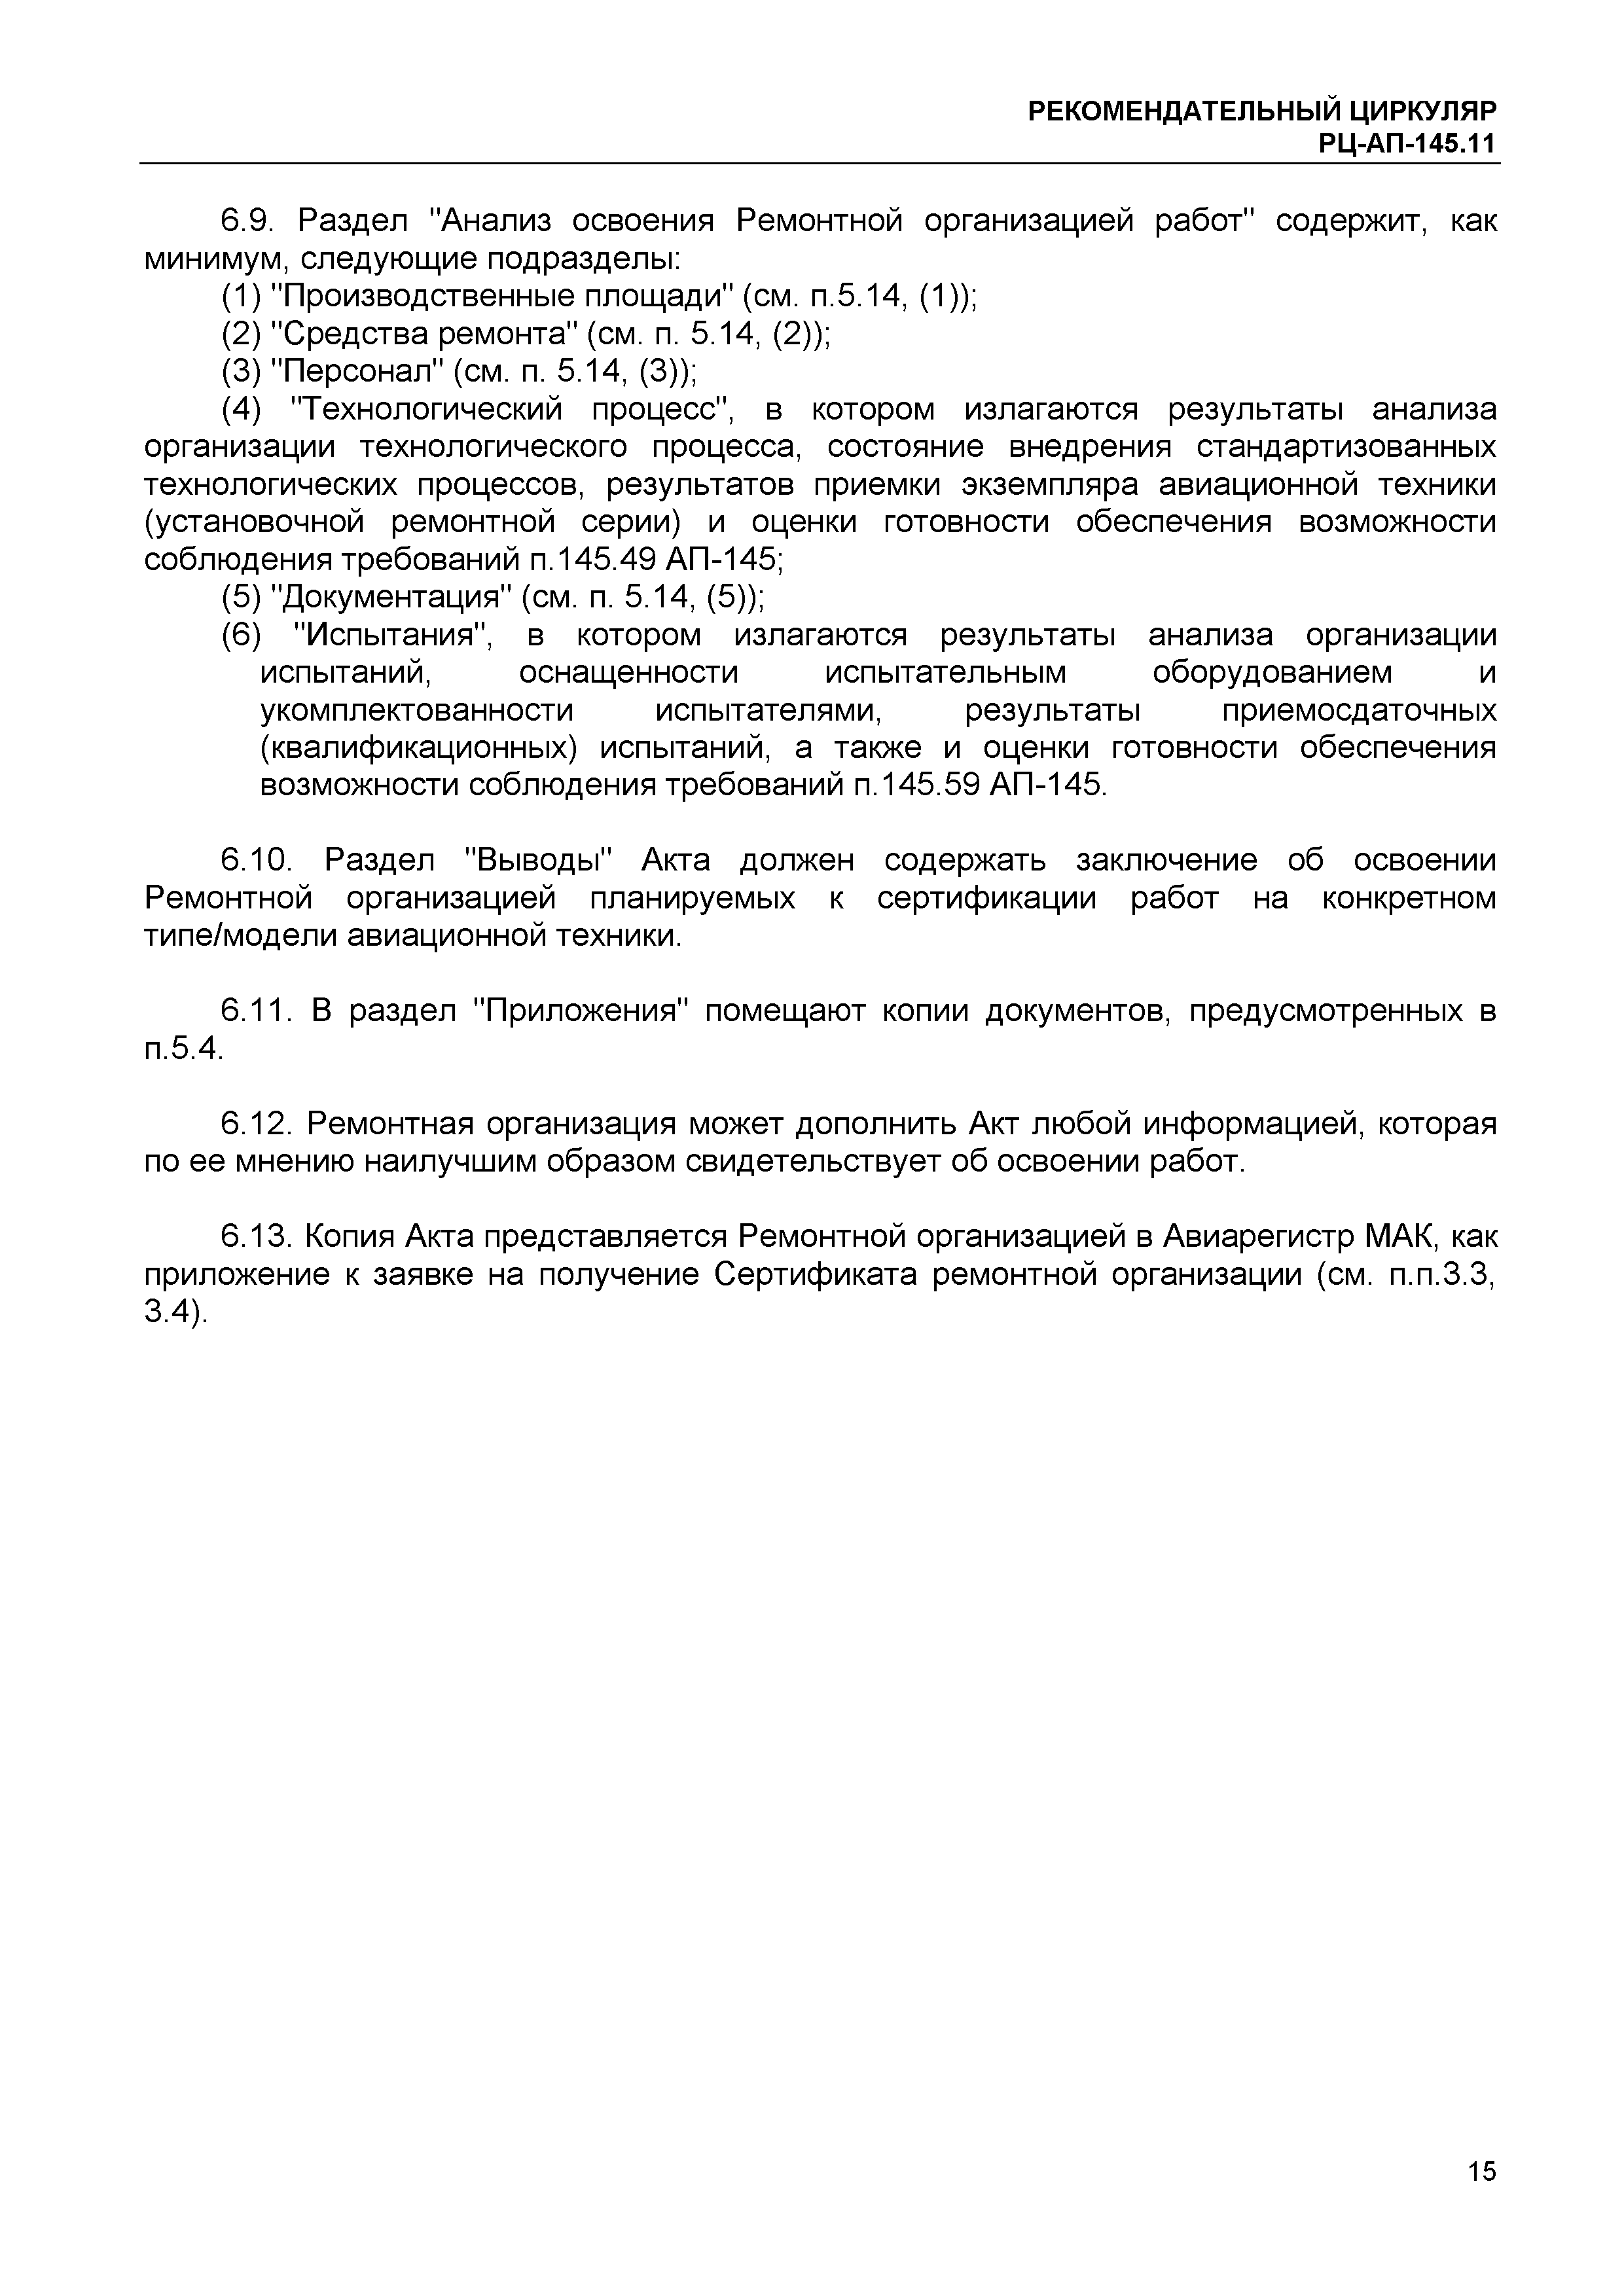 Рекомендательный циркуляр РЦ-АП-145.11